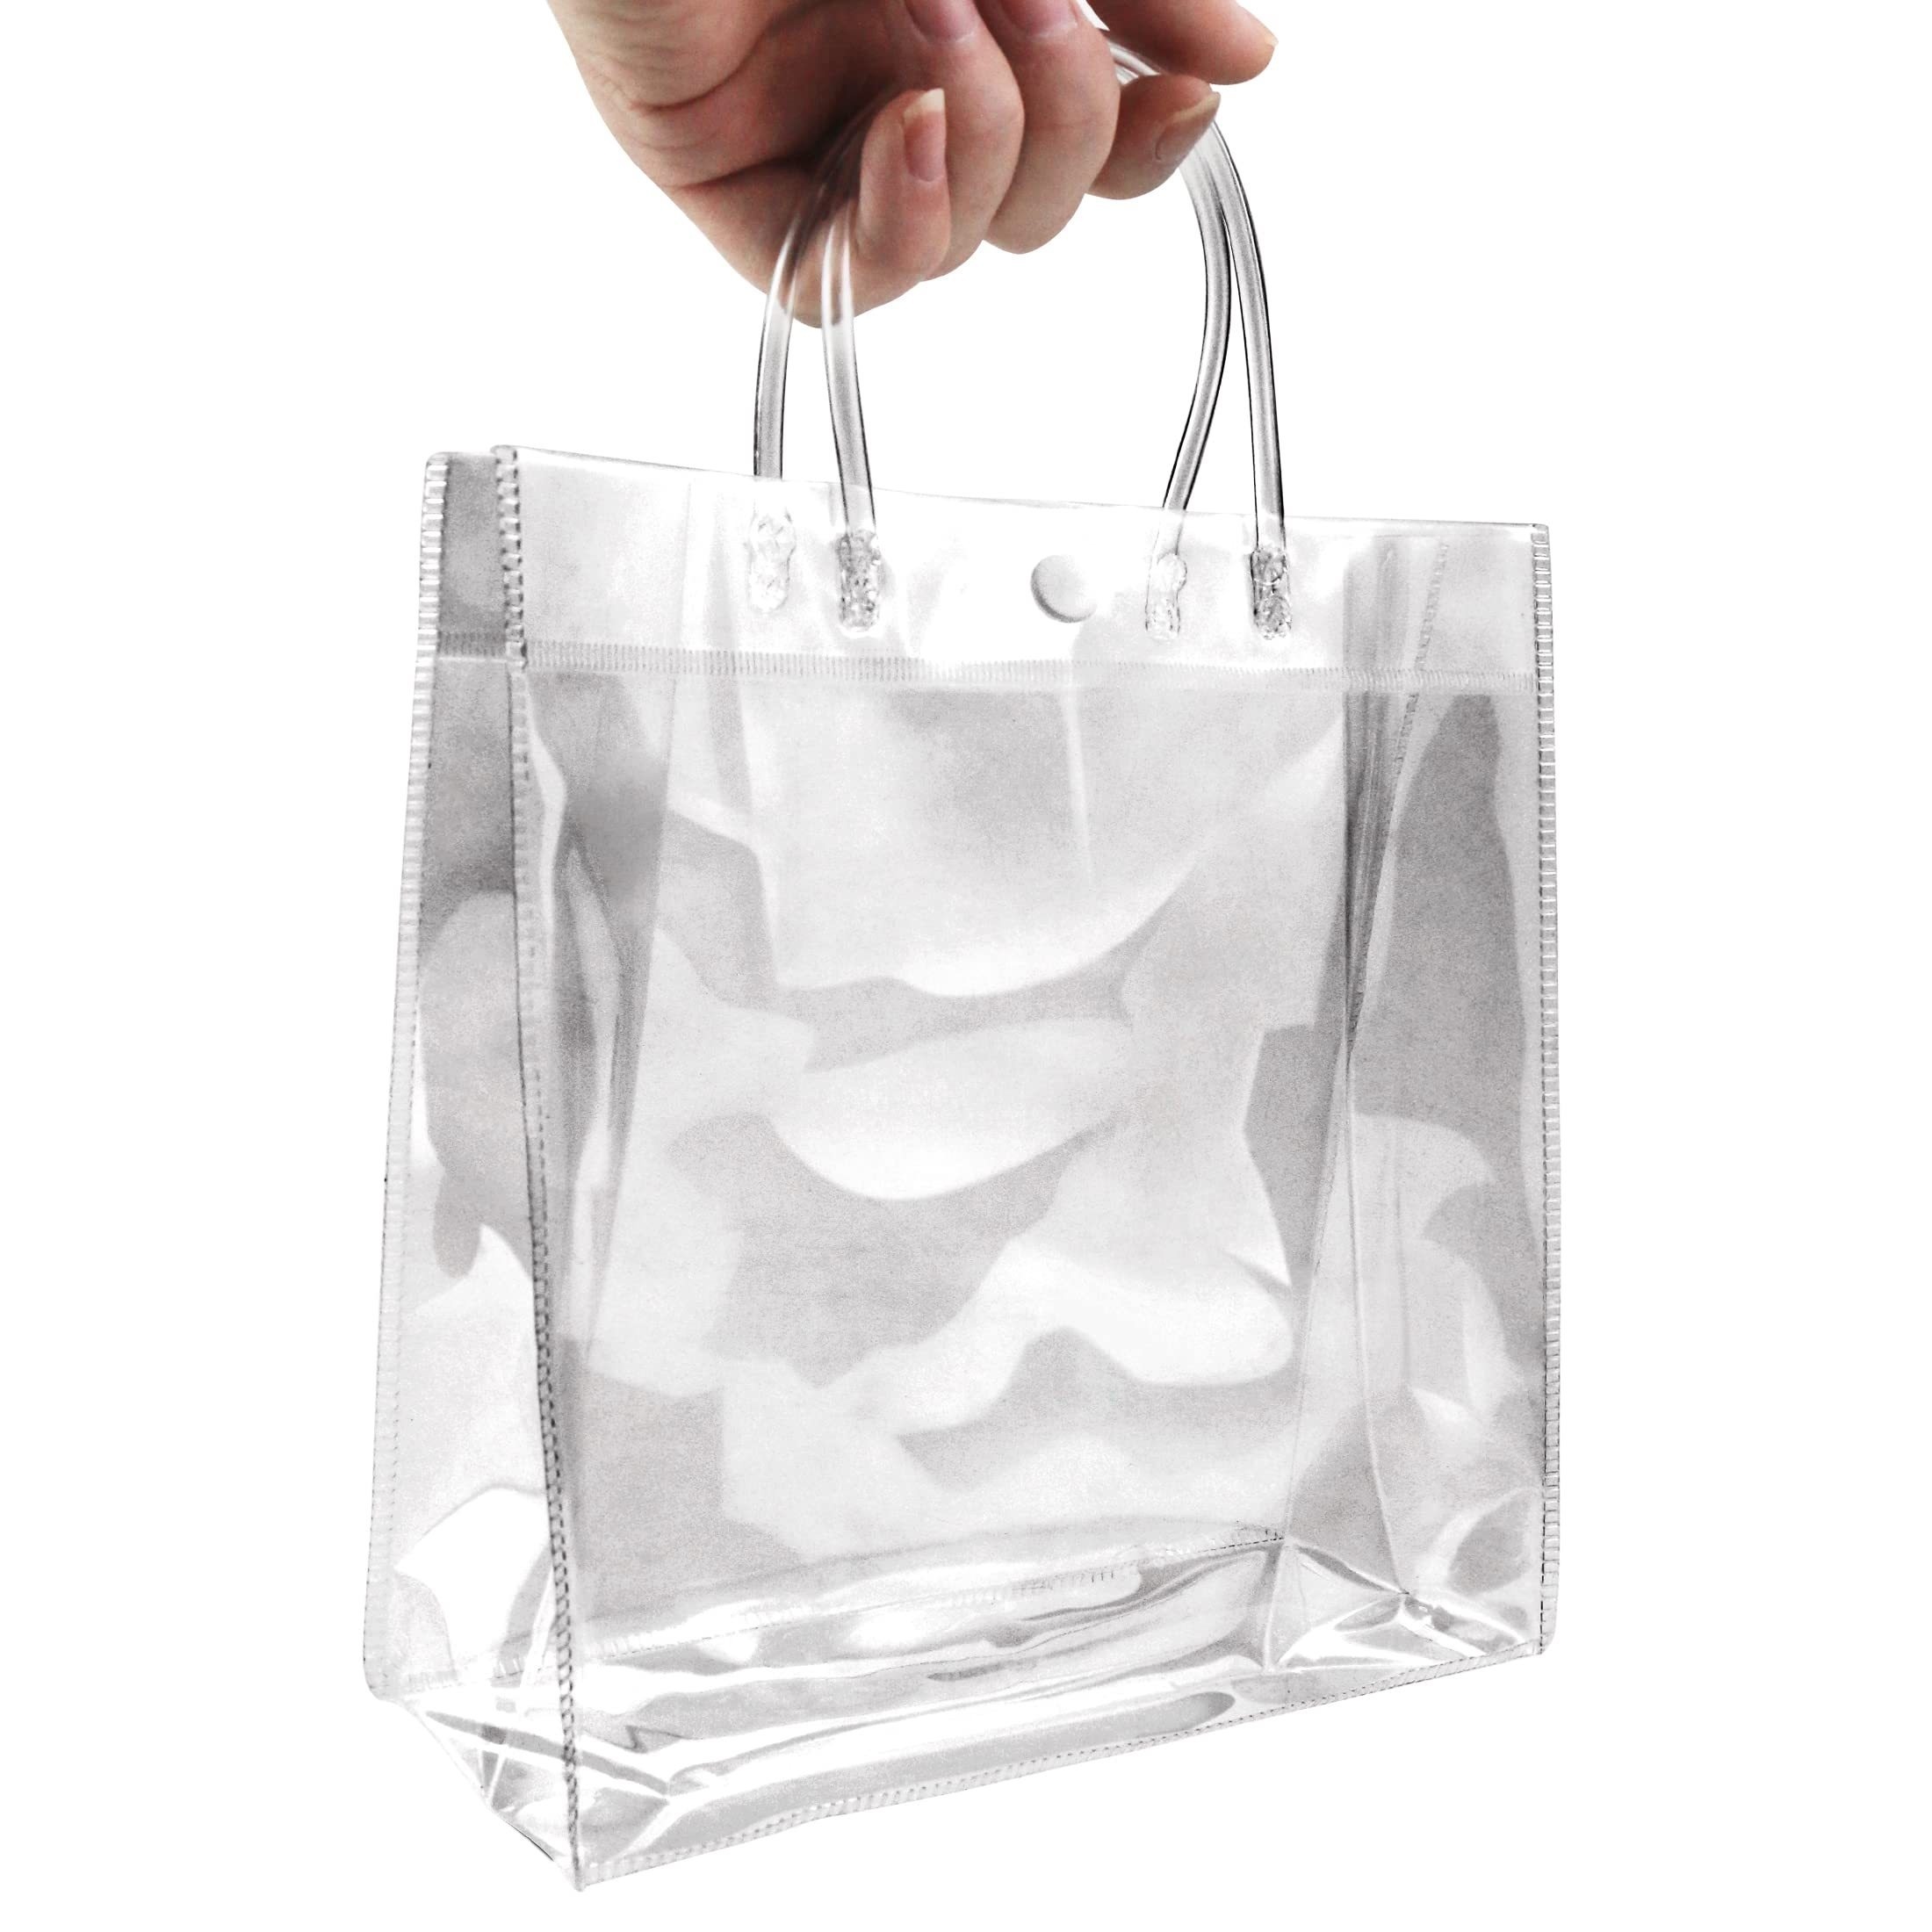 30 bolsas de plástico transparente para regalos con asa, bolsa de regalo de  PVC transparente para regalos de Navidad, bolsas de compras reutilizables